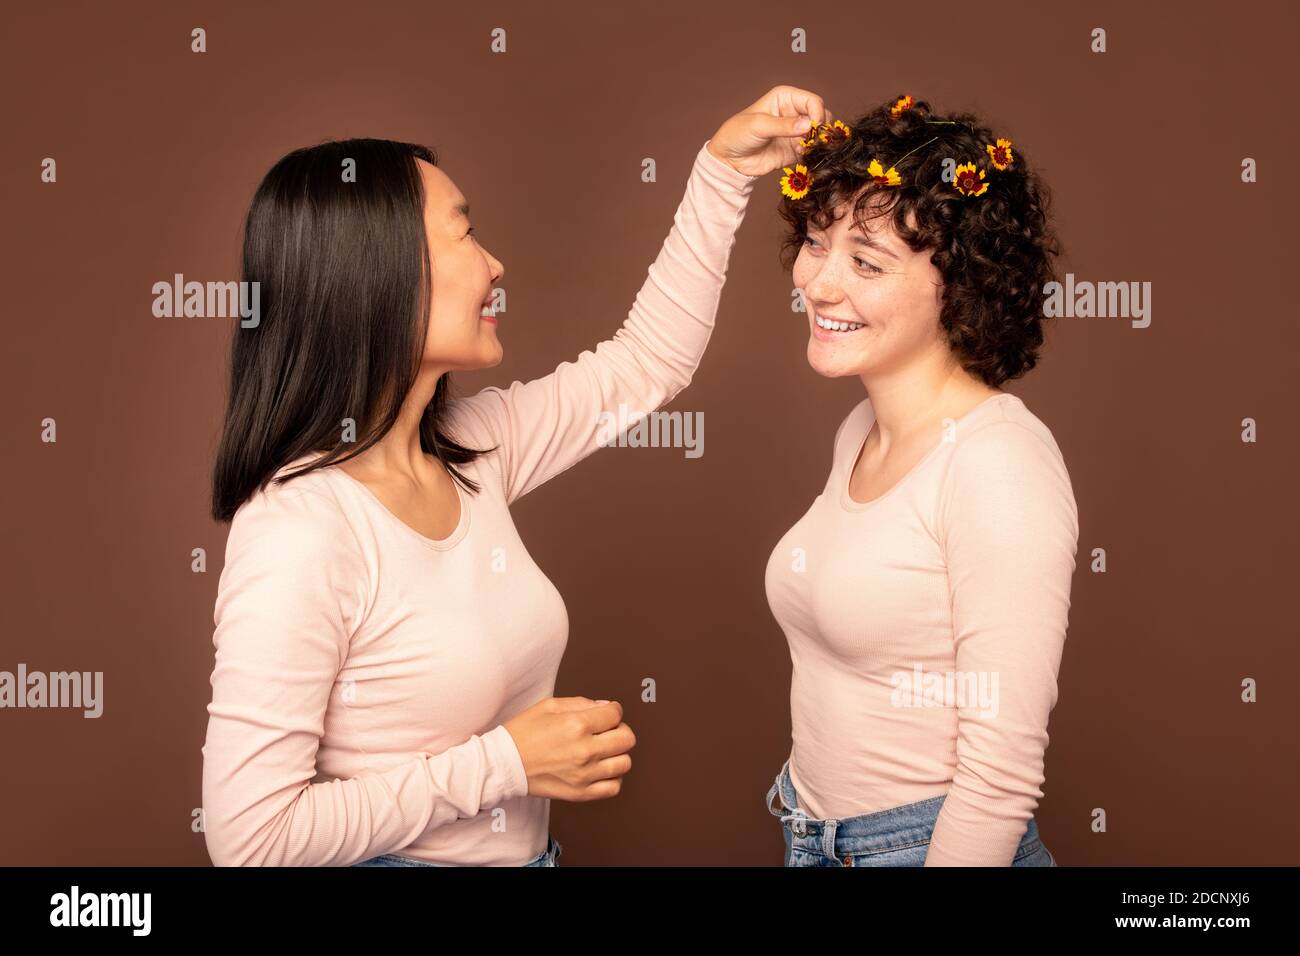 Eine von zwei jungen interkulturellen Frauen, die kleine Blumen hineinstecken Haare ihrer Freundin Stockfoto